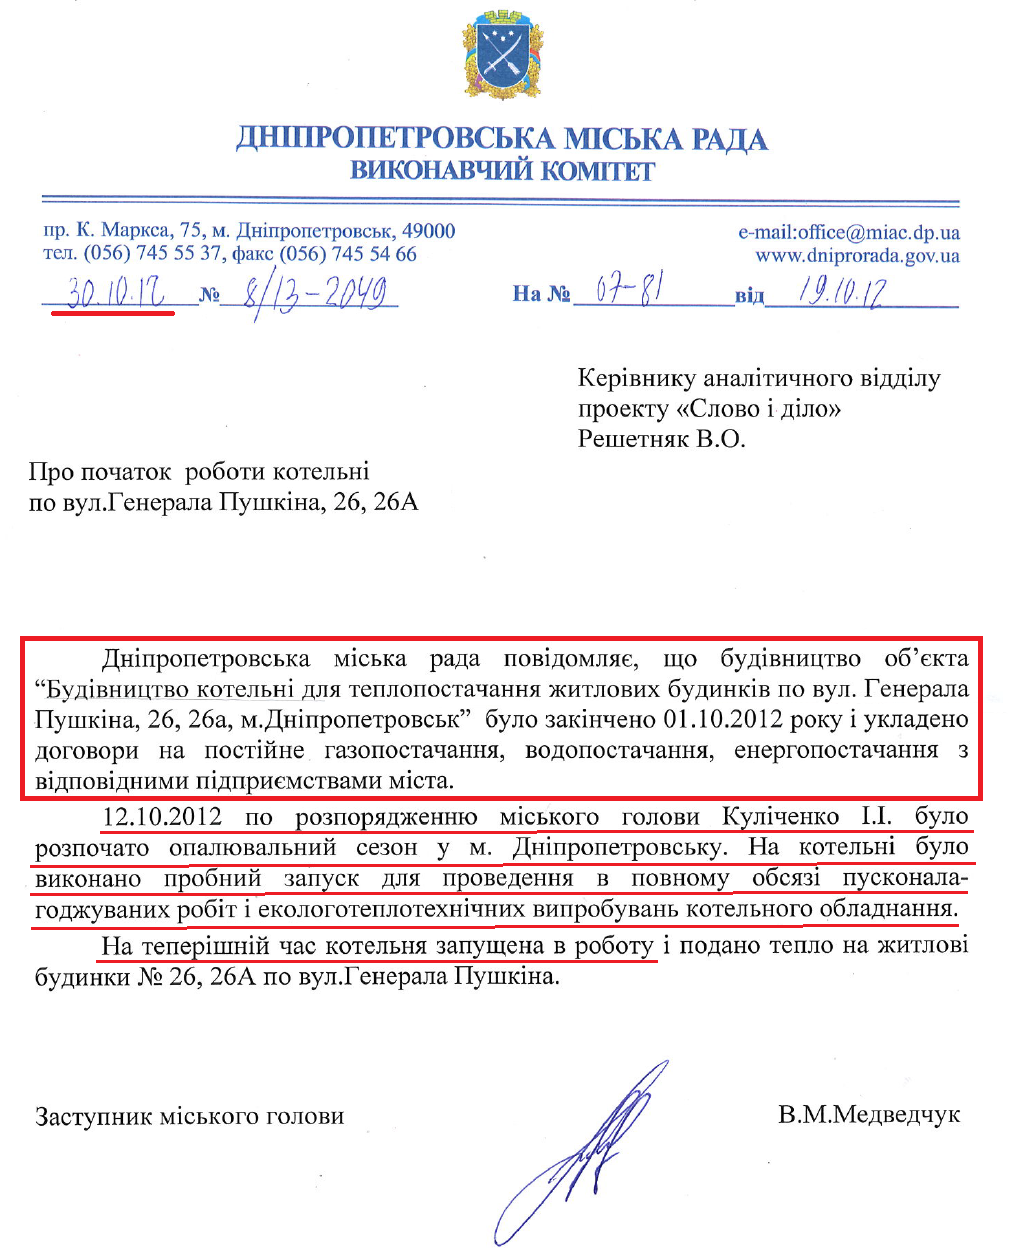 Лист Заступника Дніпропетровського міського голови В.М.Медведчука від 30 жовтня 2012 року